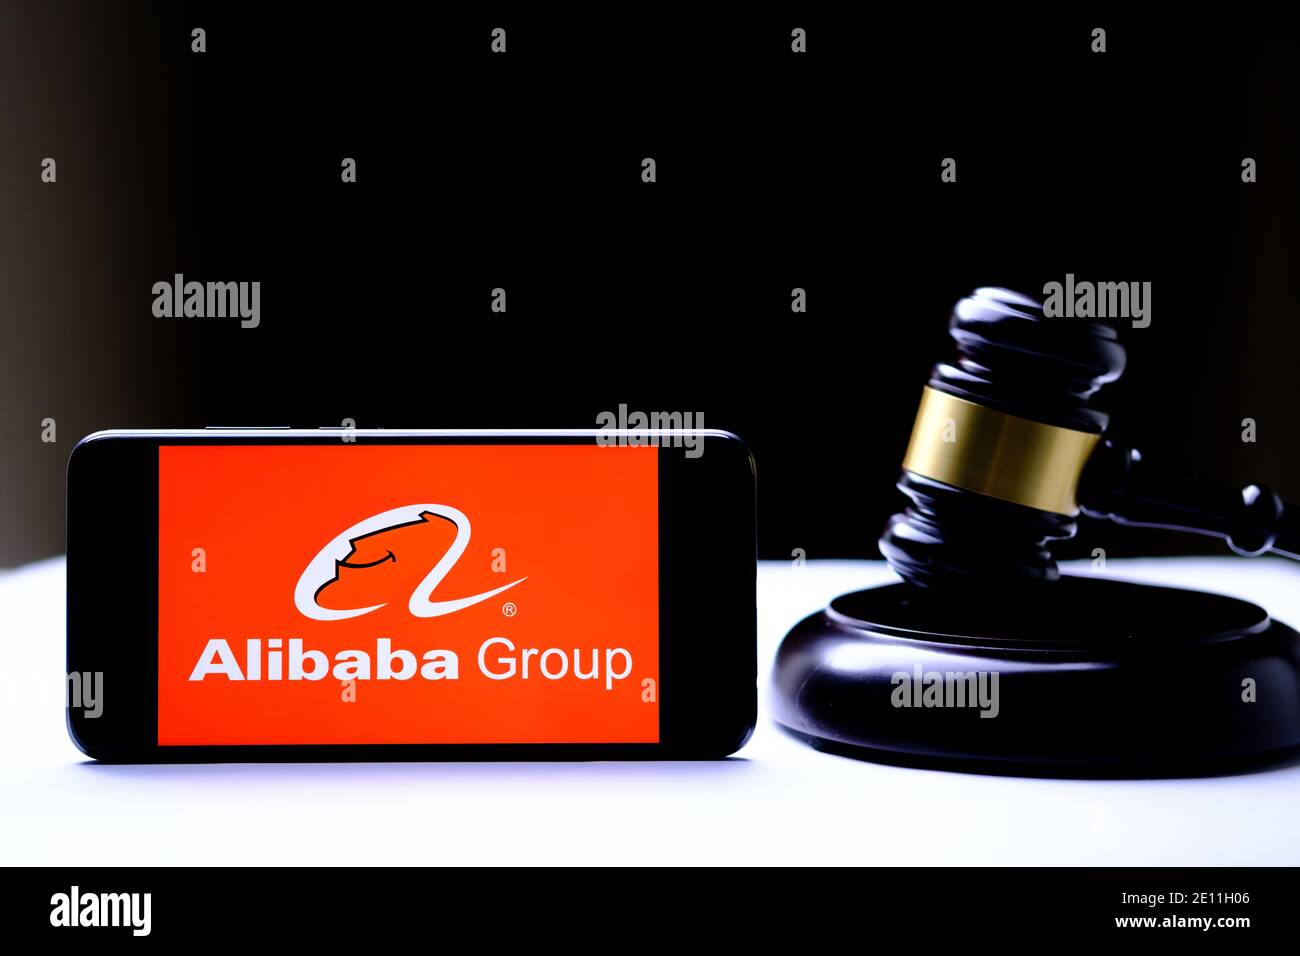 Stafford, Reino Unido - 3 de enero de 2021: Logotipo de Alibaba en el teléfono inteligente colocado junto a los jueces gavel. Concepto de regulación. Foto real, no una monta Foto de stock